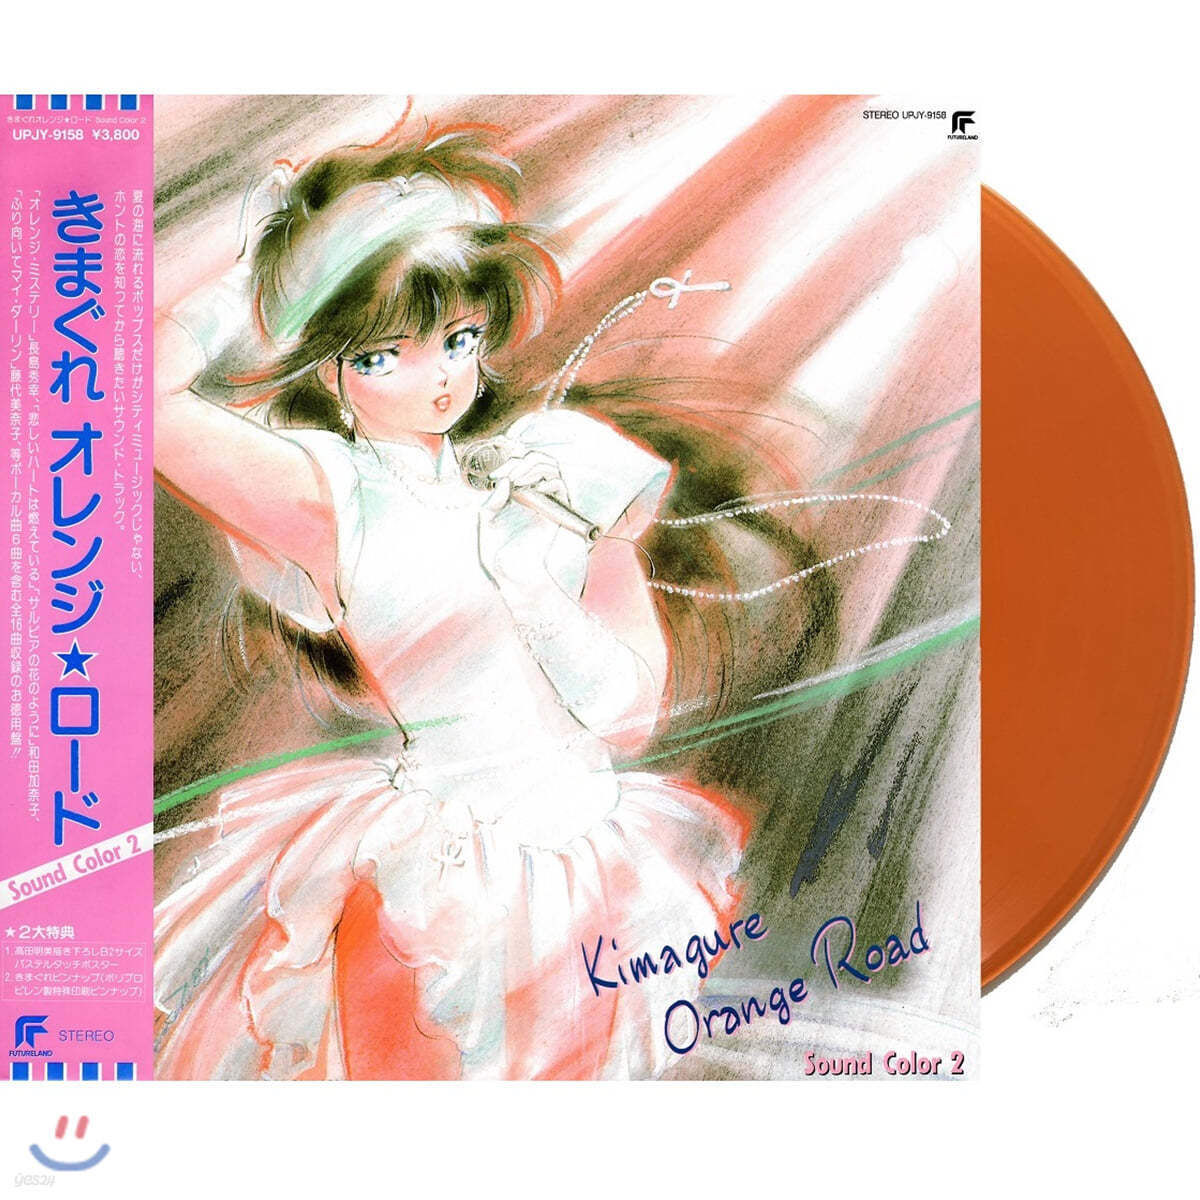 변덕쟁이 오렌지 로드 애니메이션 음악 (Kimagure Orange Road OST: Sound Color 2) [오렌지 컬러 LP] 